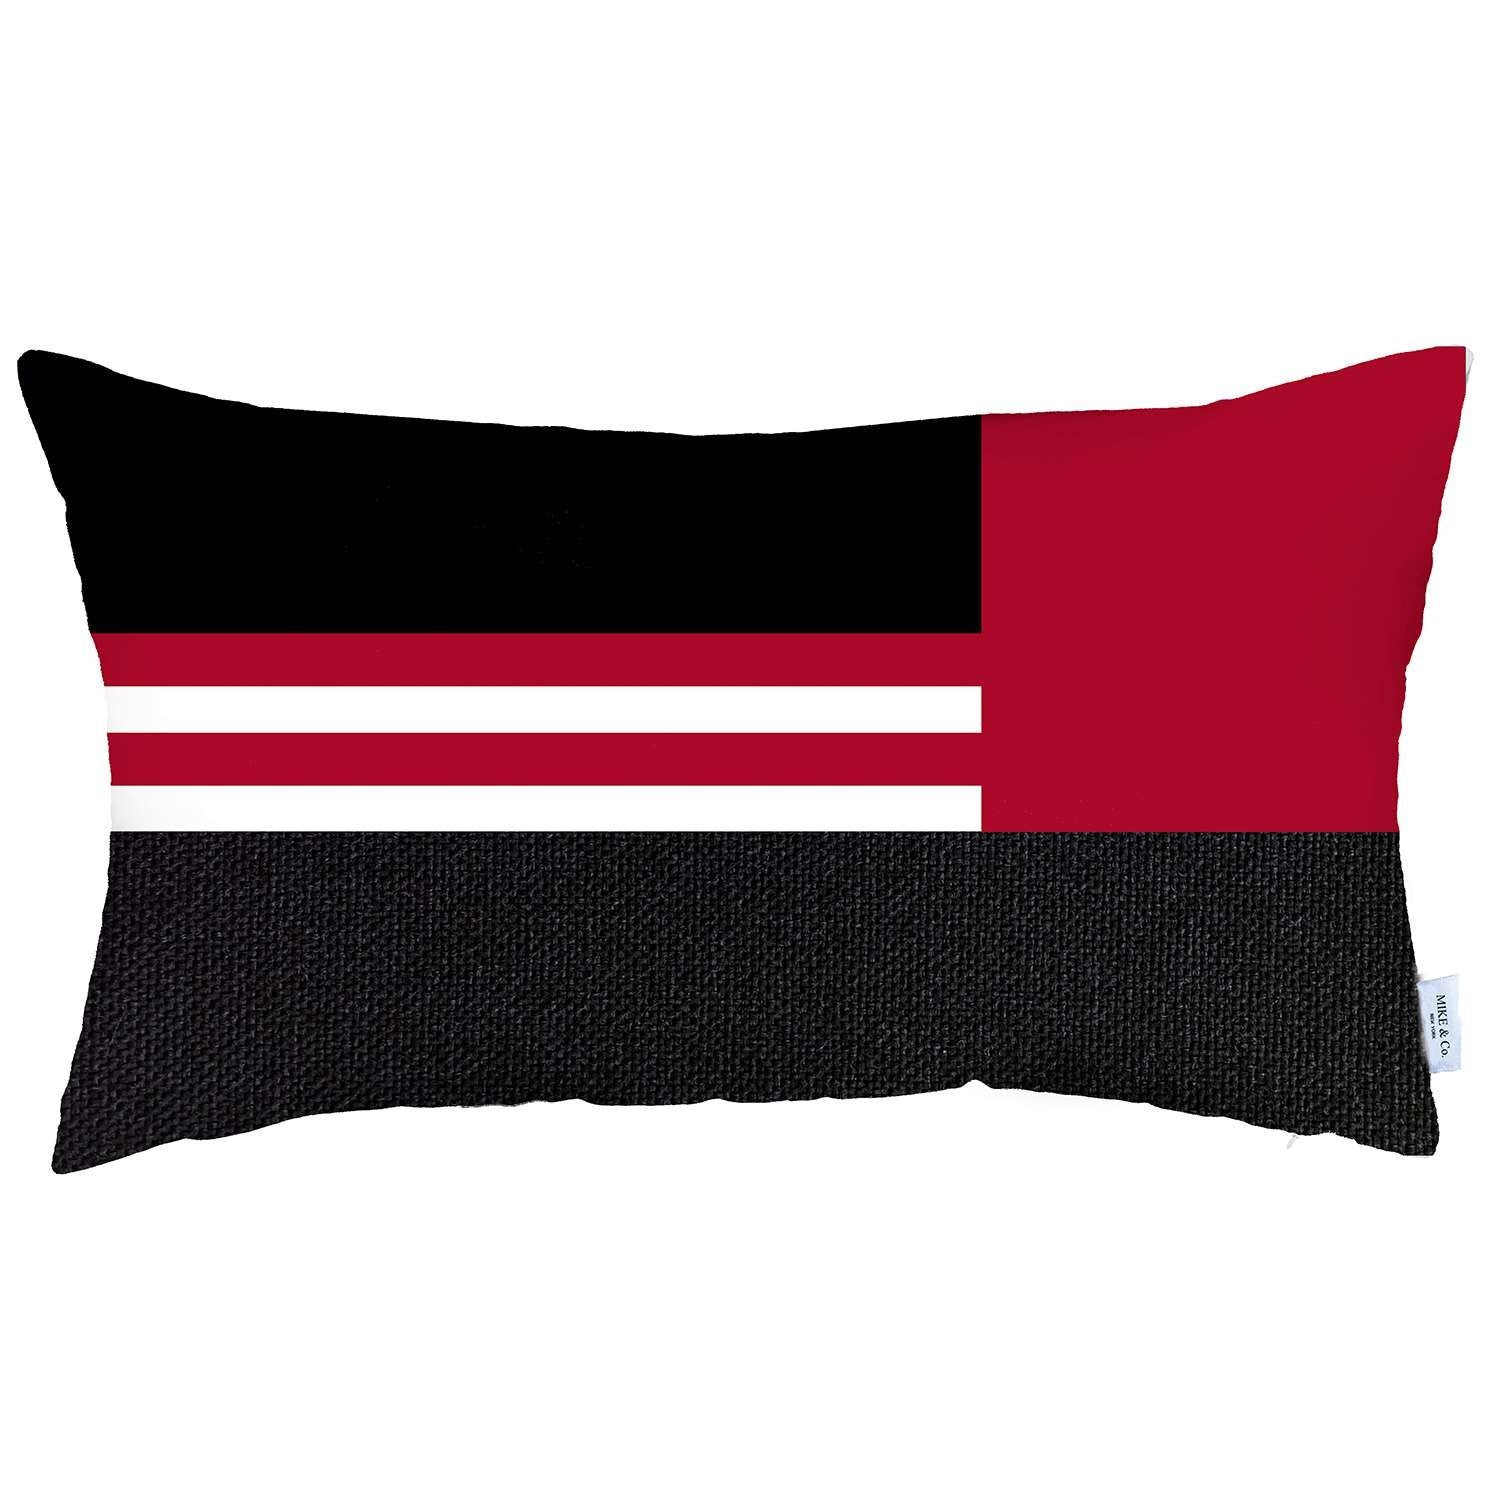 Red and Black Geometric Lumbar Throw Pillow